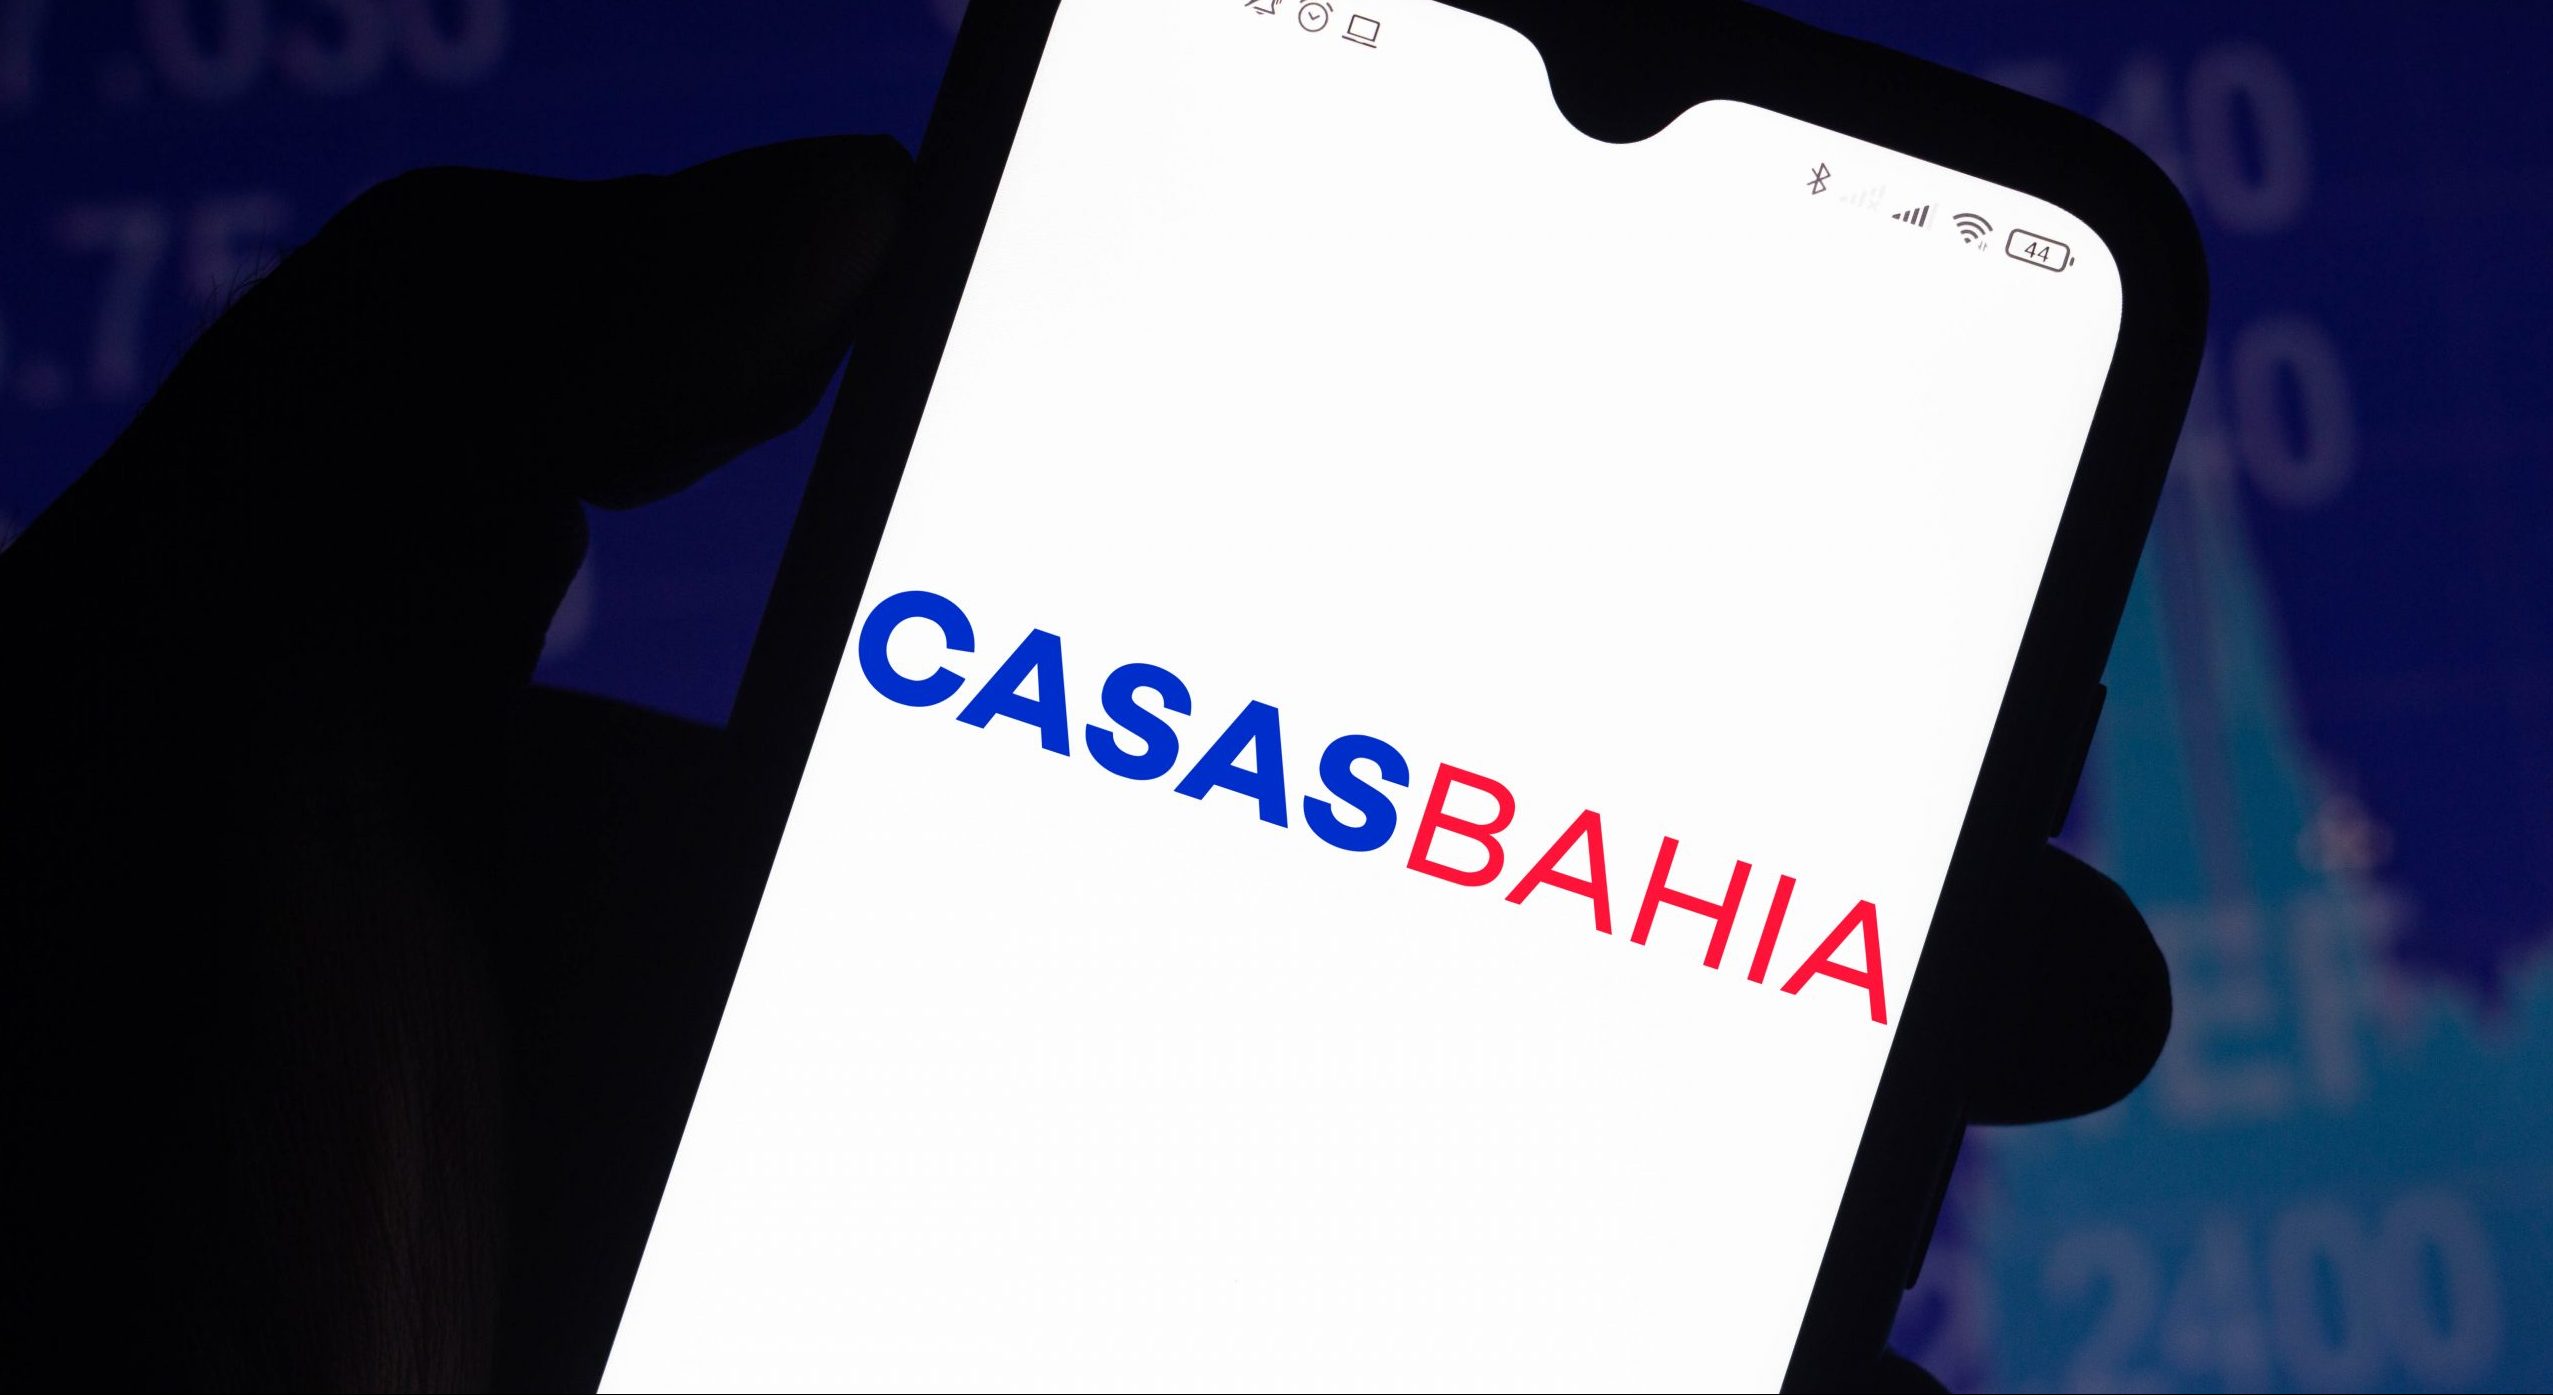 Casas Bahia: por que a ação disparou 34% após BHIA3 pedir recuperação extrajudicial?